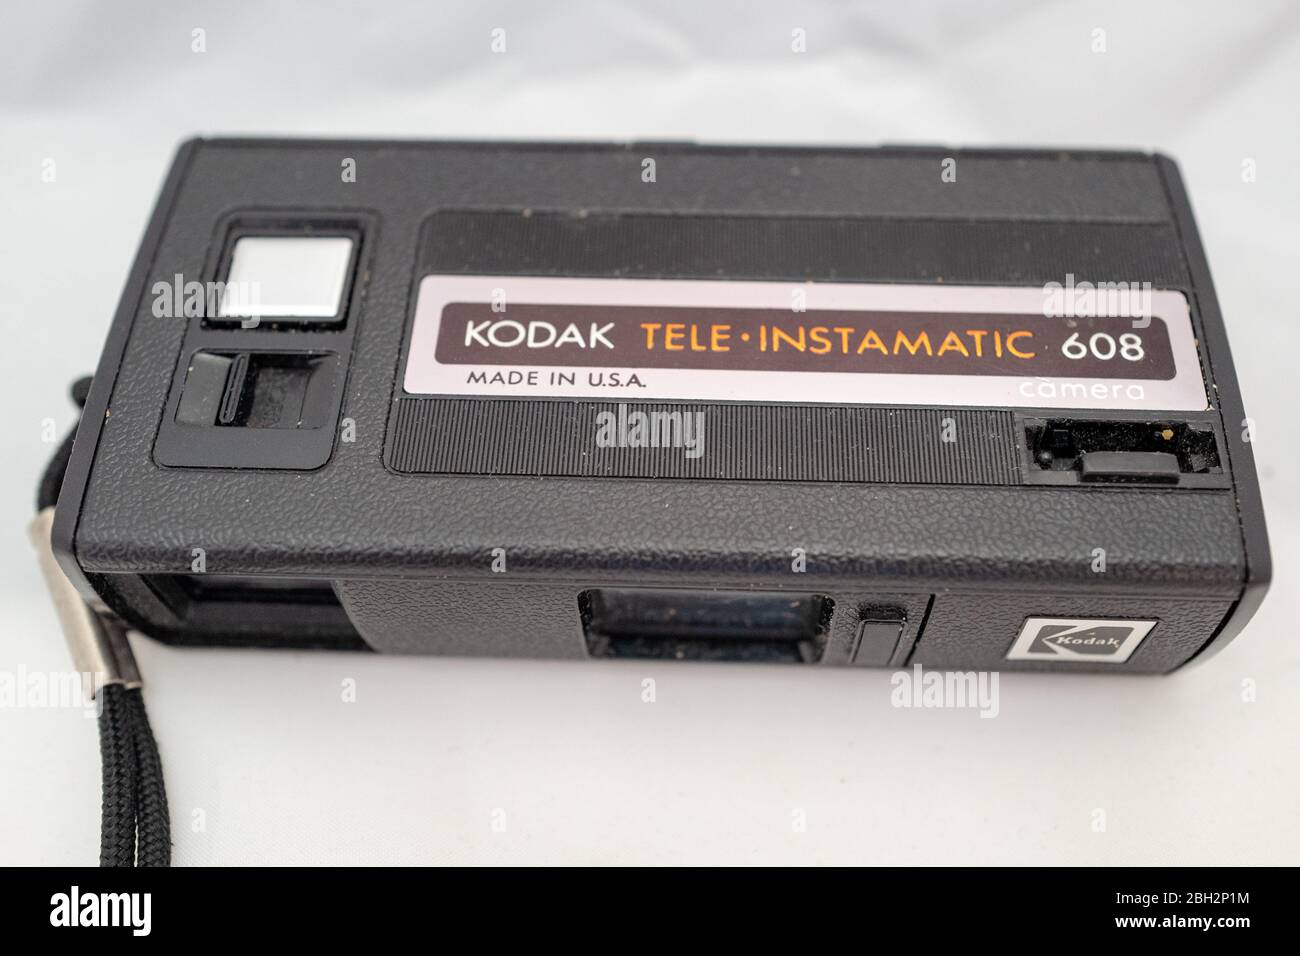 Primo piano della telecamera a film analogico con marchio Kodak Tele-Instamatic 608 formato 110, 7 febbraio 2020. () Foto Stock